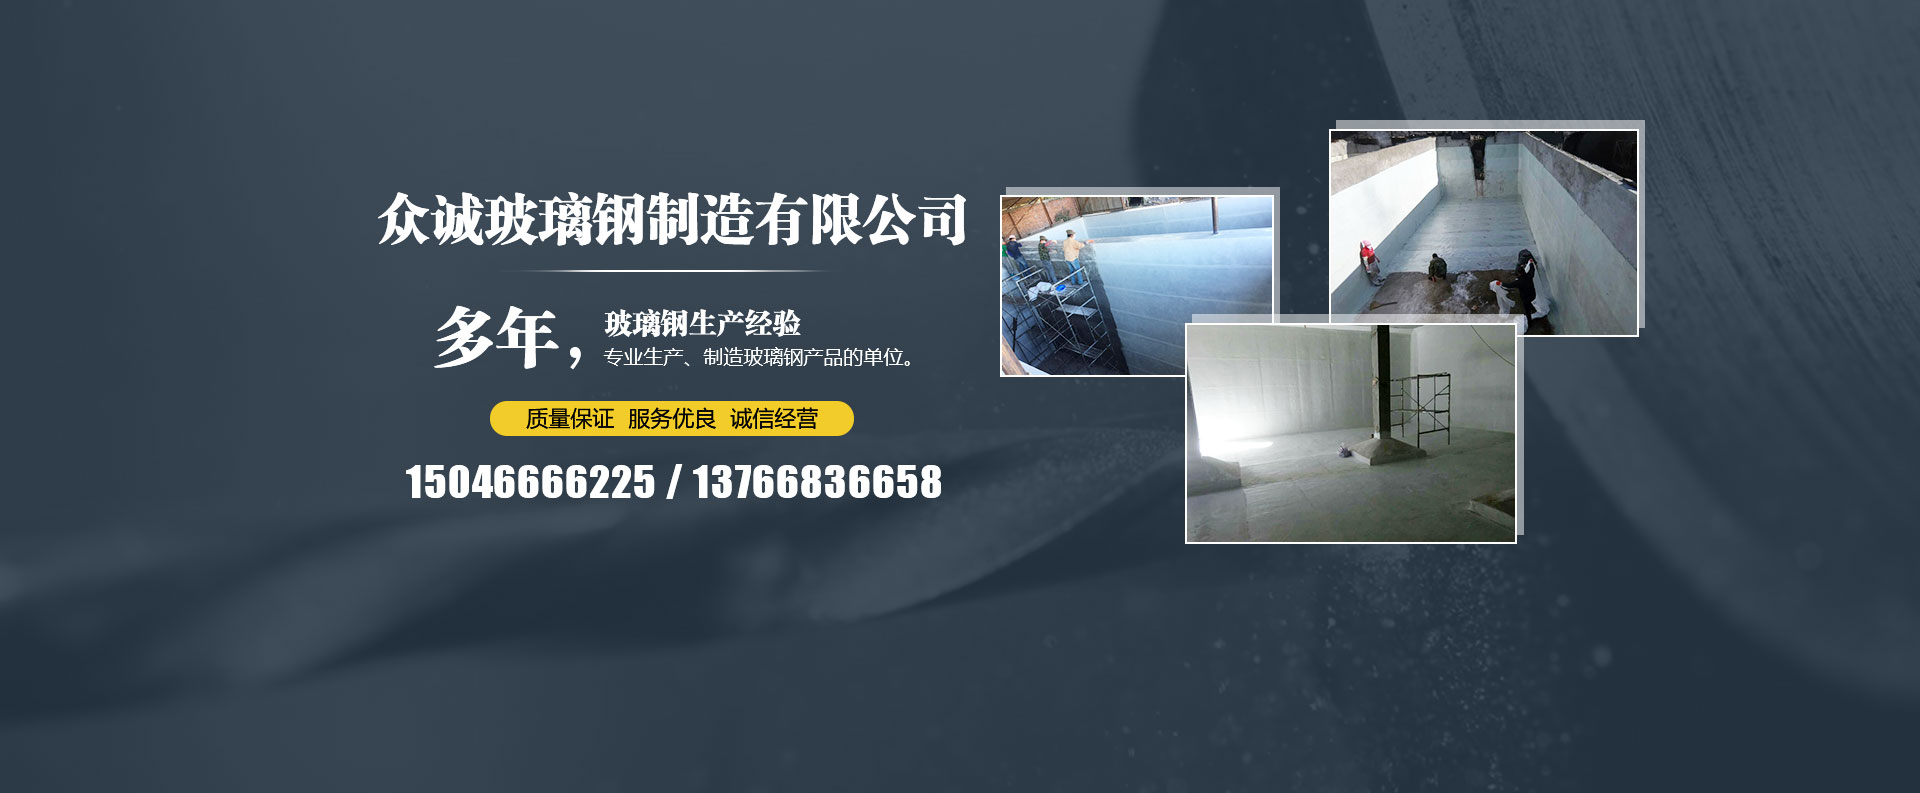 关于当前产品517888之老品牌·(中国)官方网站的成功案例等相关图片